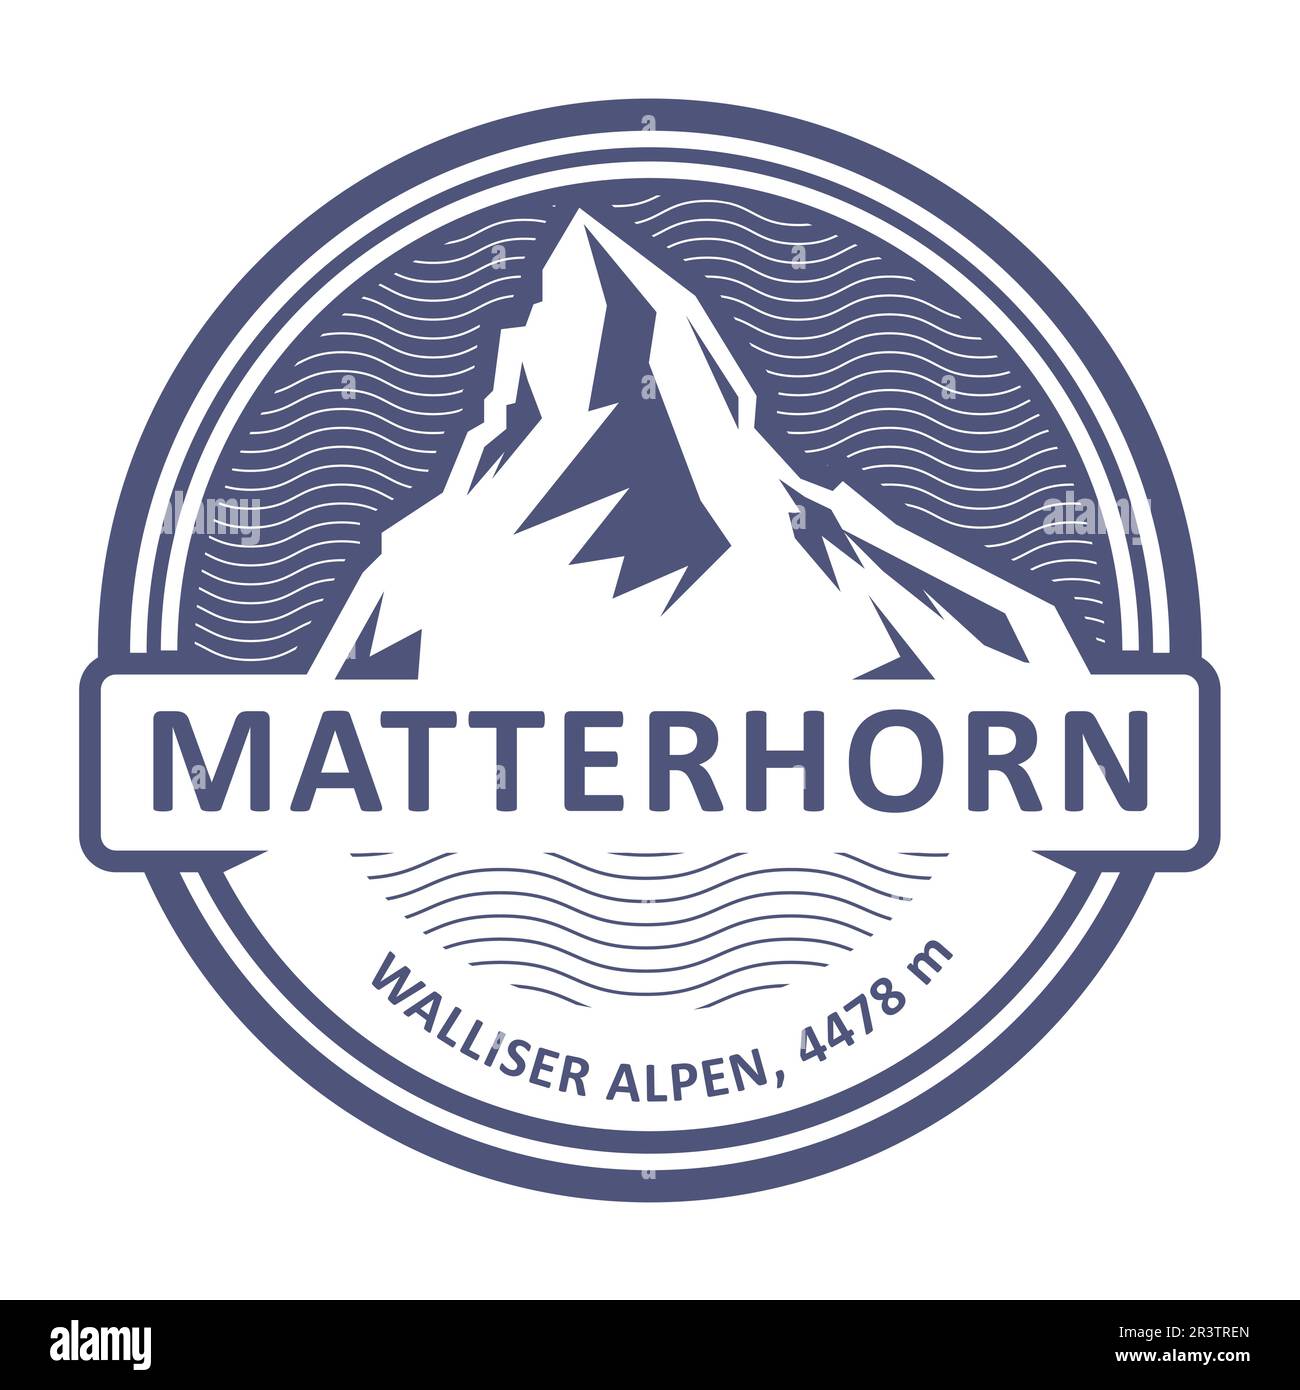 Emblem with stamp of Matterhorn, Monte Cervino peak, mountain of Pennine Alps, vector Stock Vector